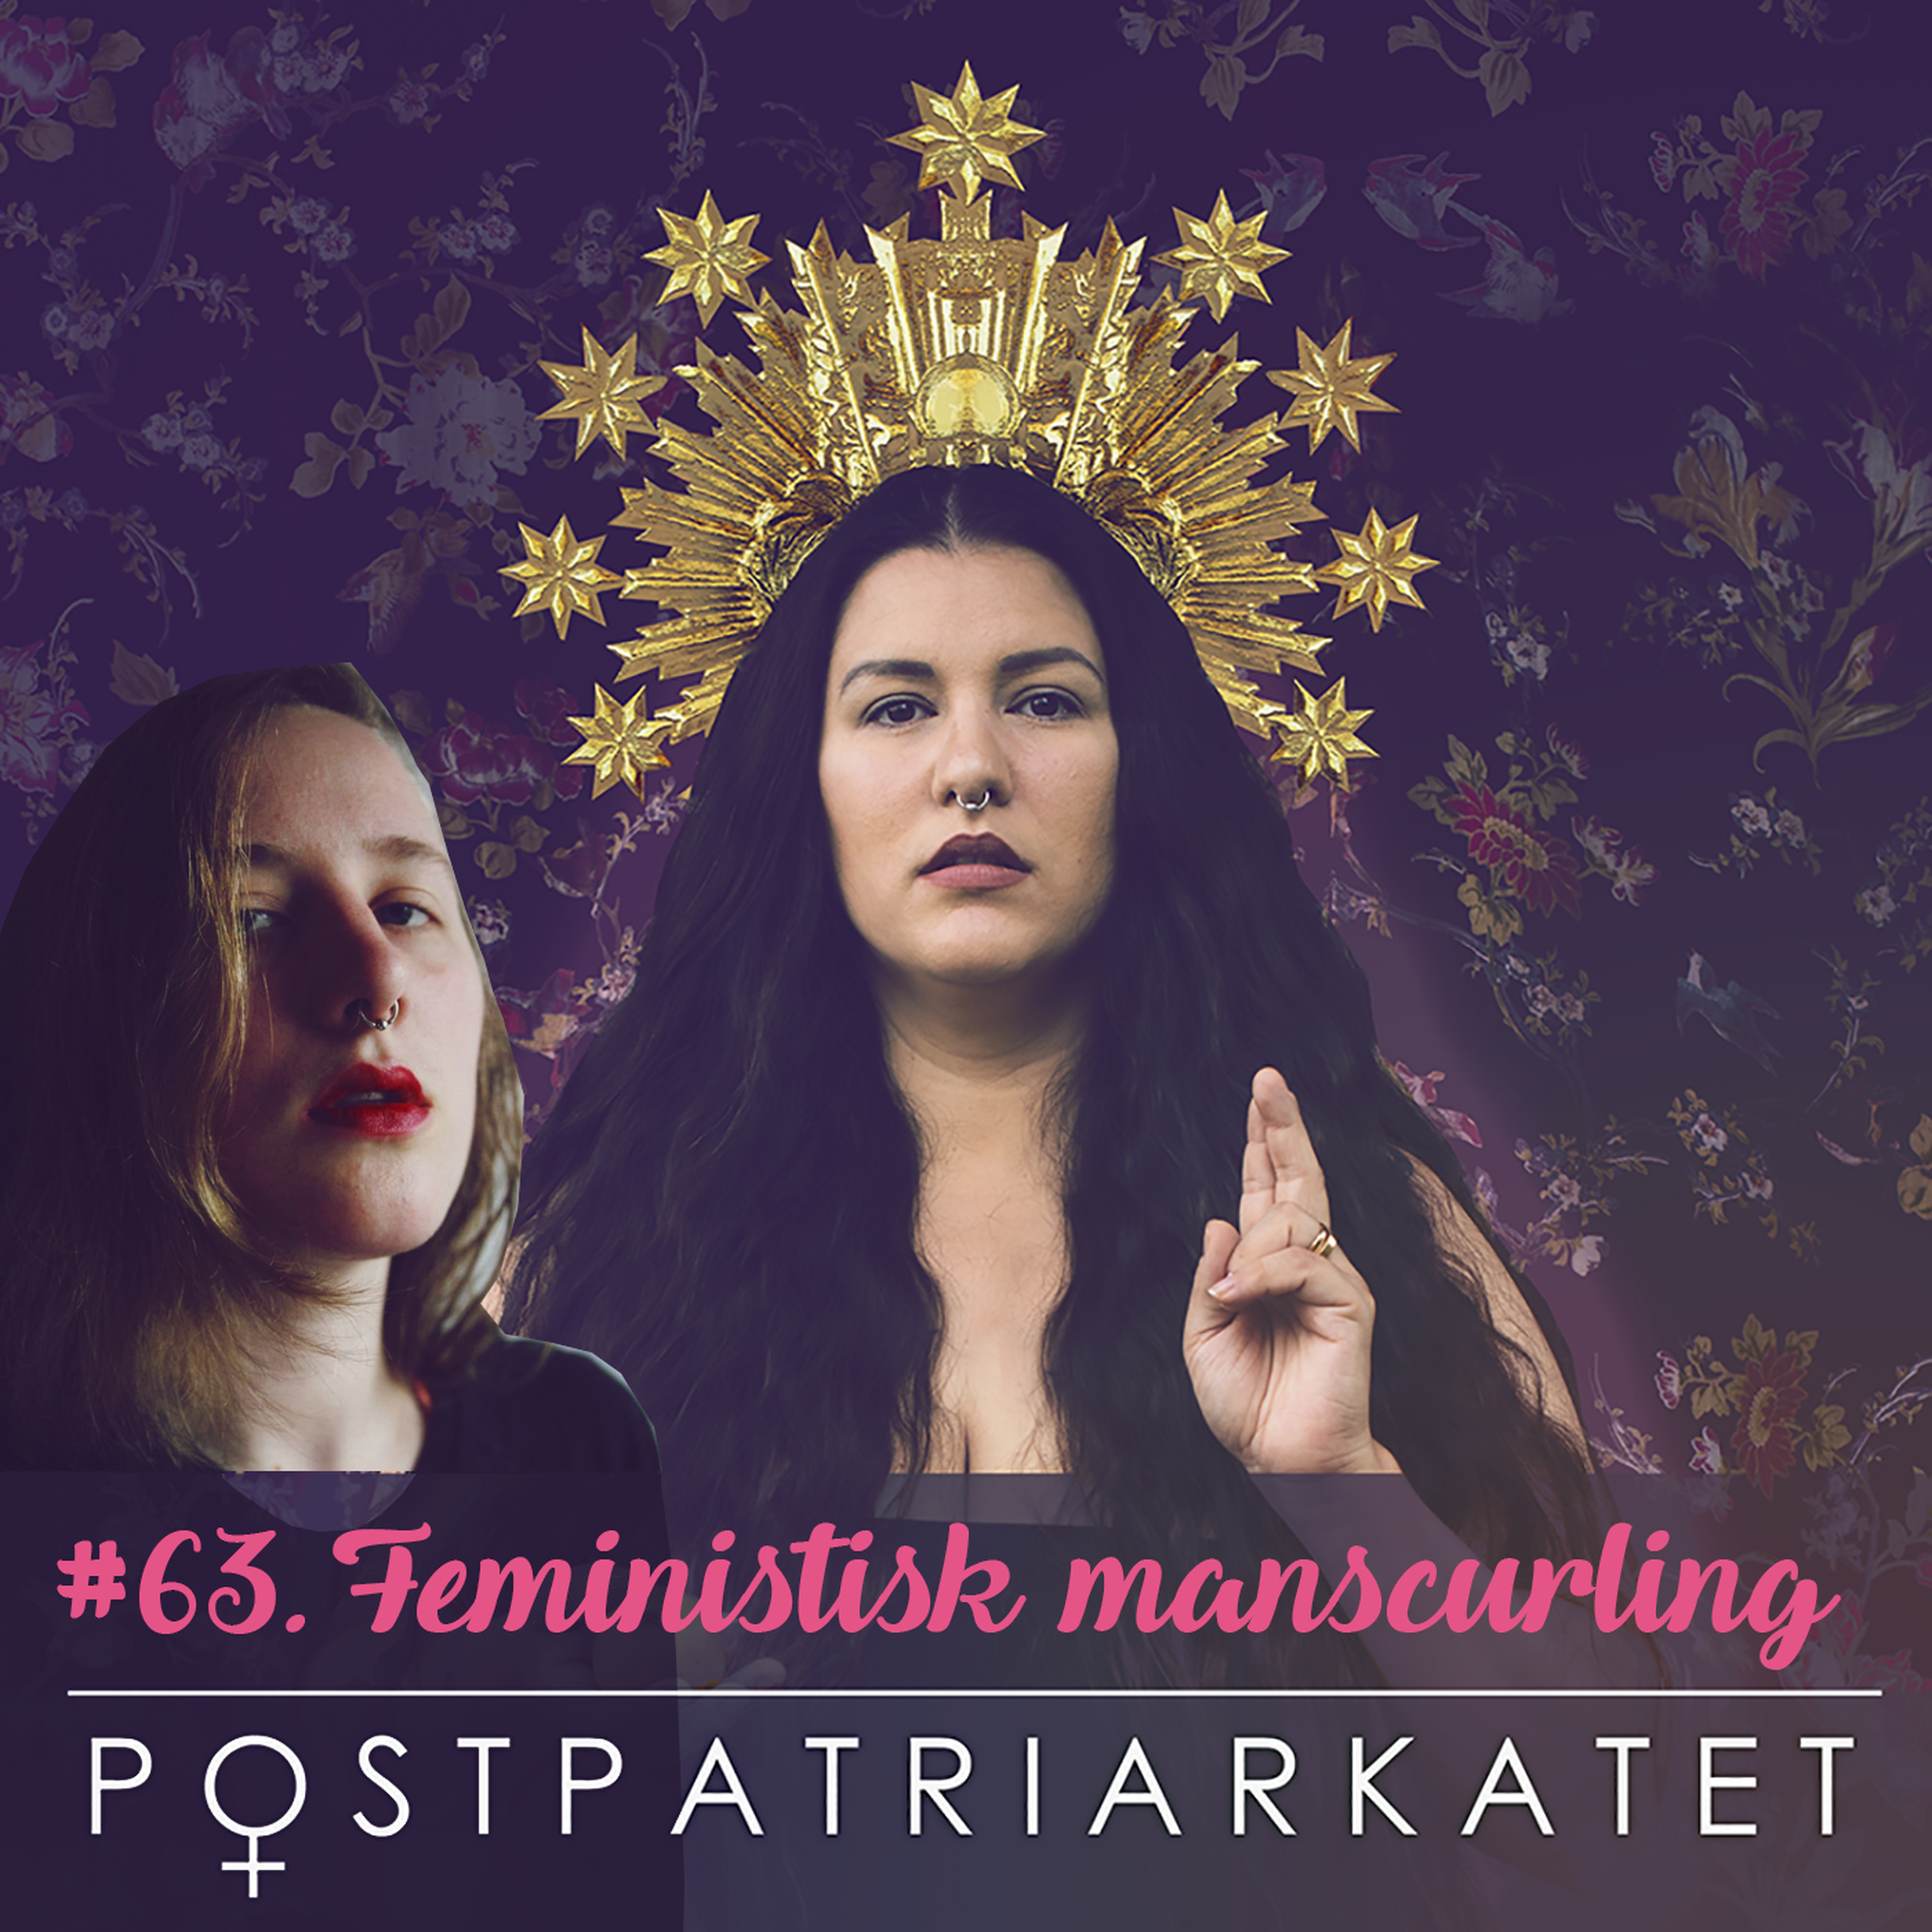 Feministisk manscurling - #63